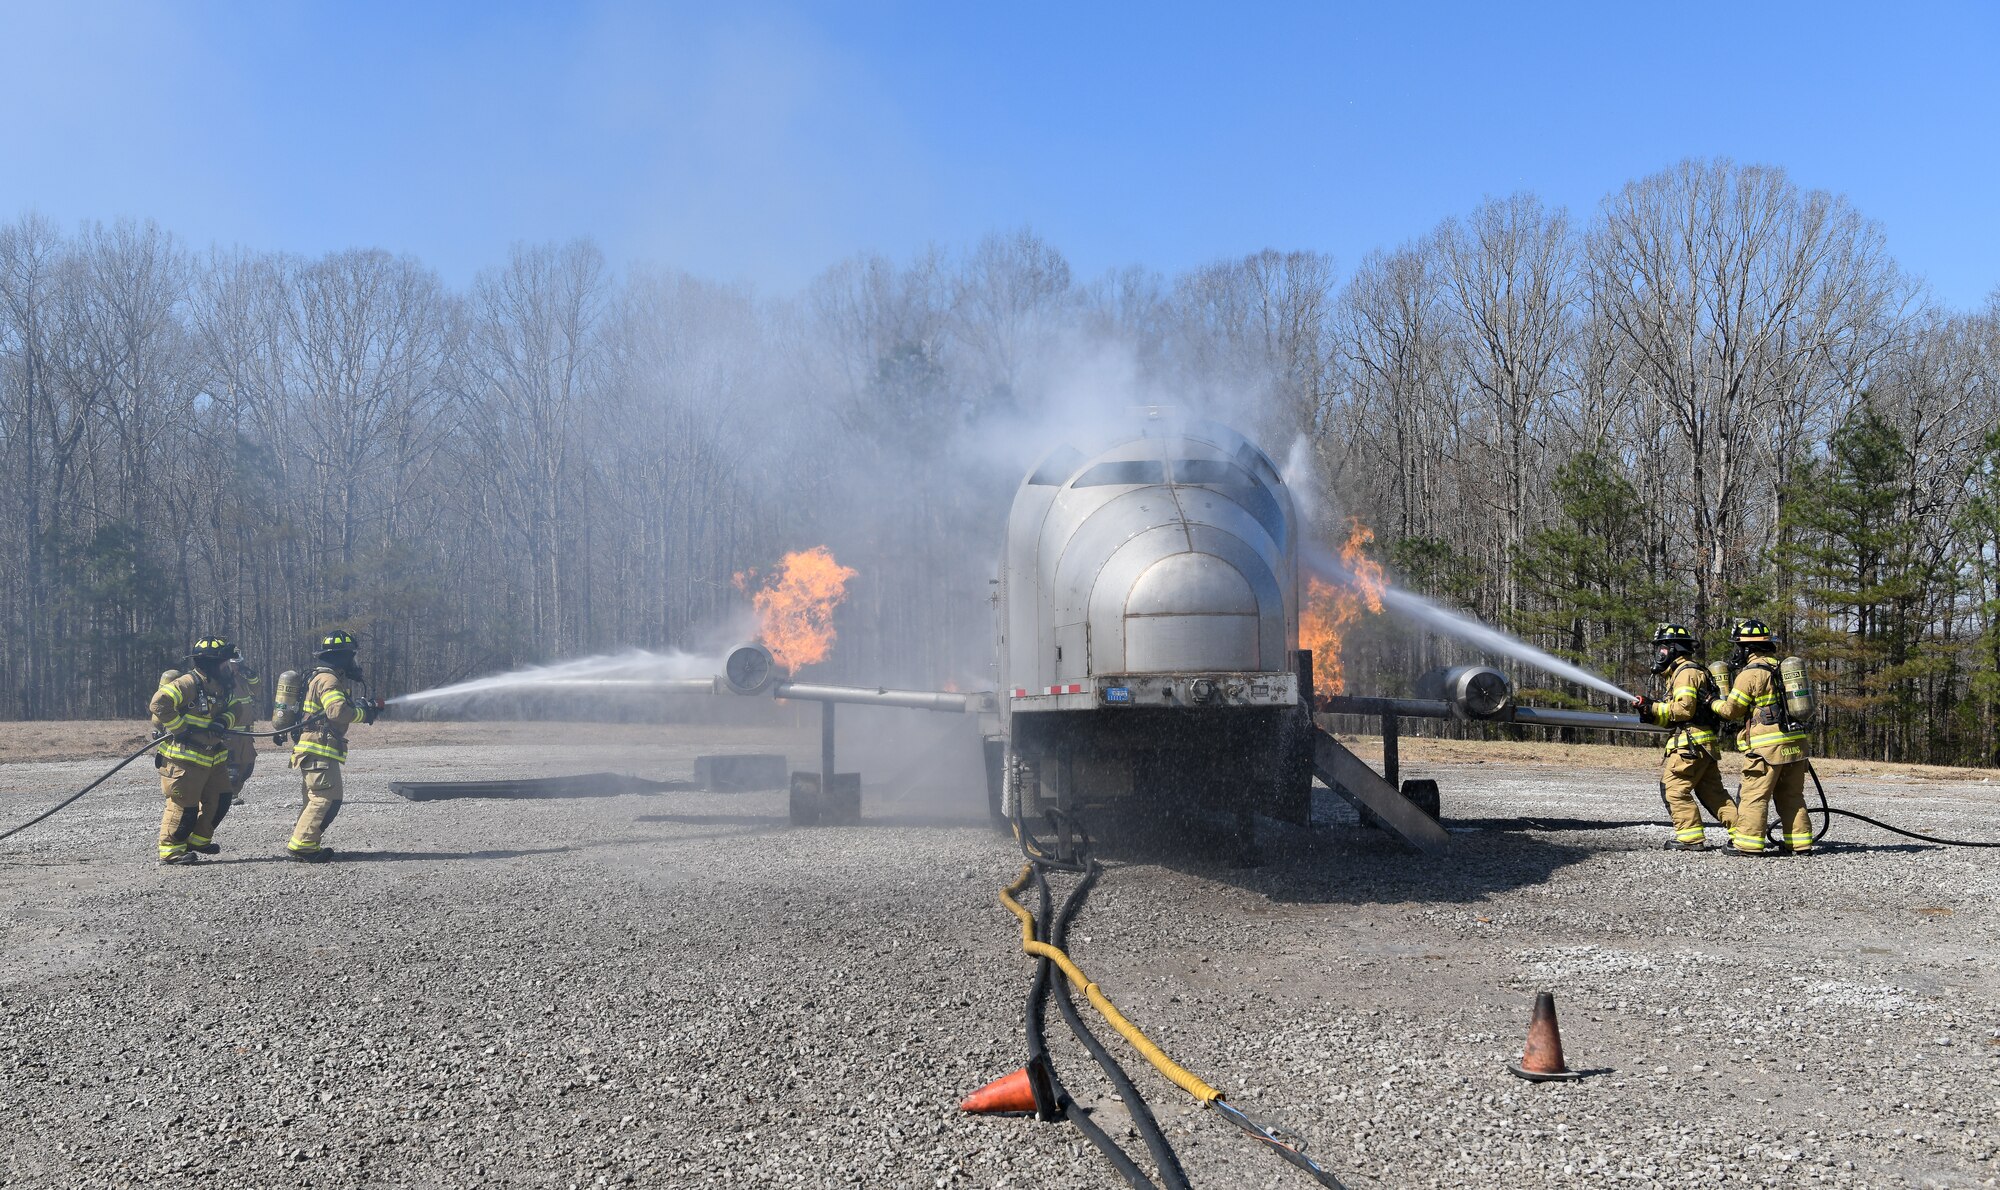 Firefighters battling blaze on aircraft fire simulator